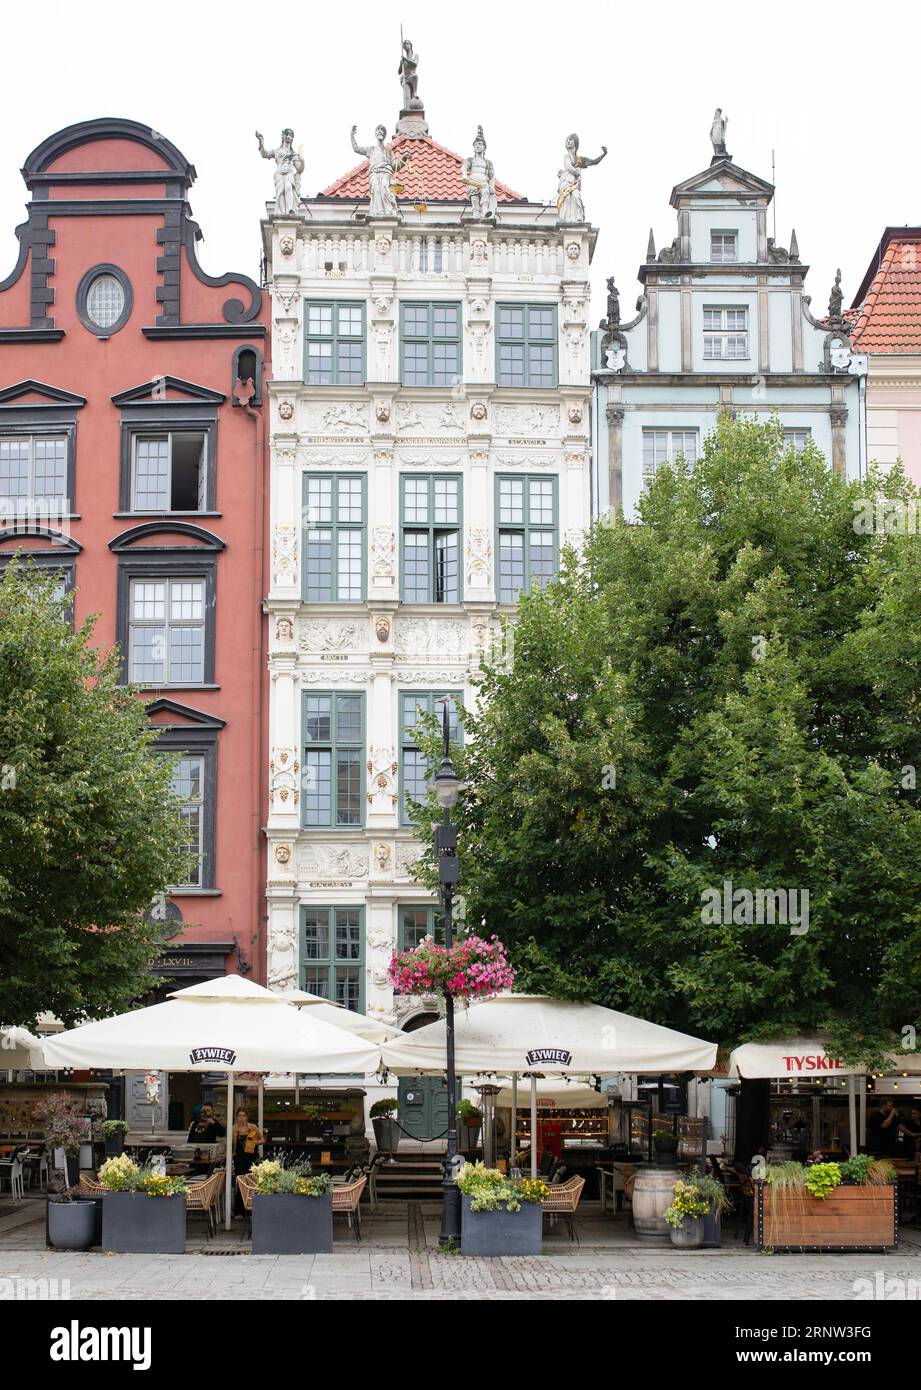 Danzig, Polen - Architektur in der Altstadt. Häuser in der Hauptstraße. Sehenswürdigkeiten Danzig. Stockfoto